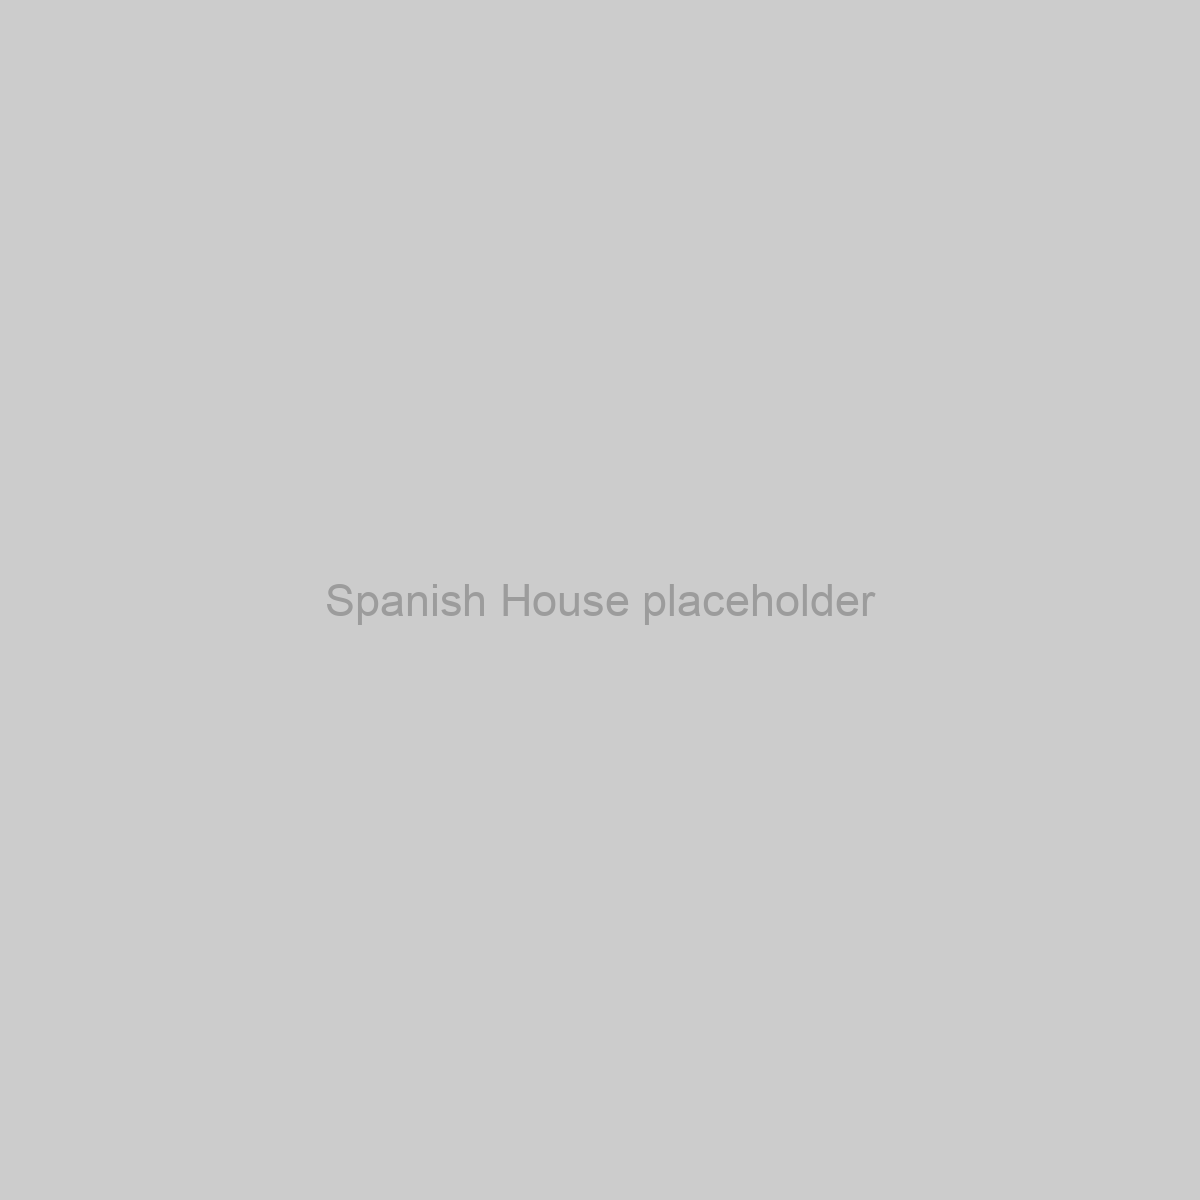 Spanish House Placeholder Image